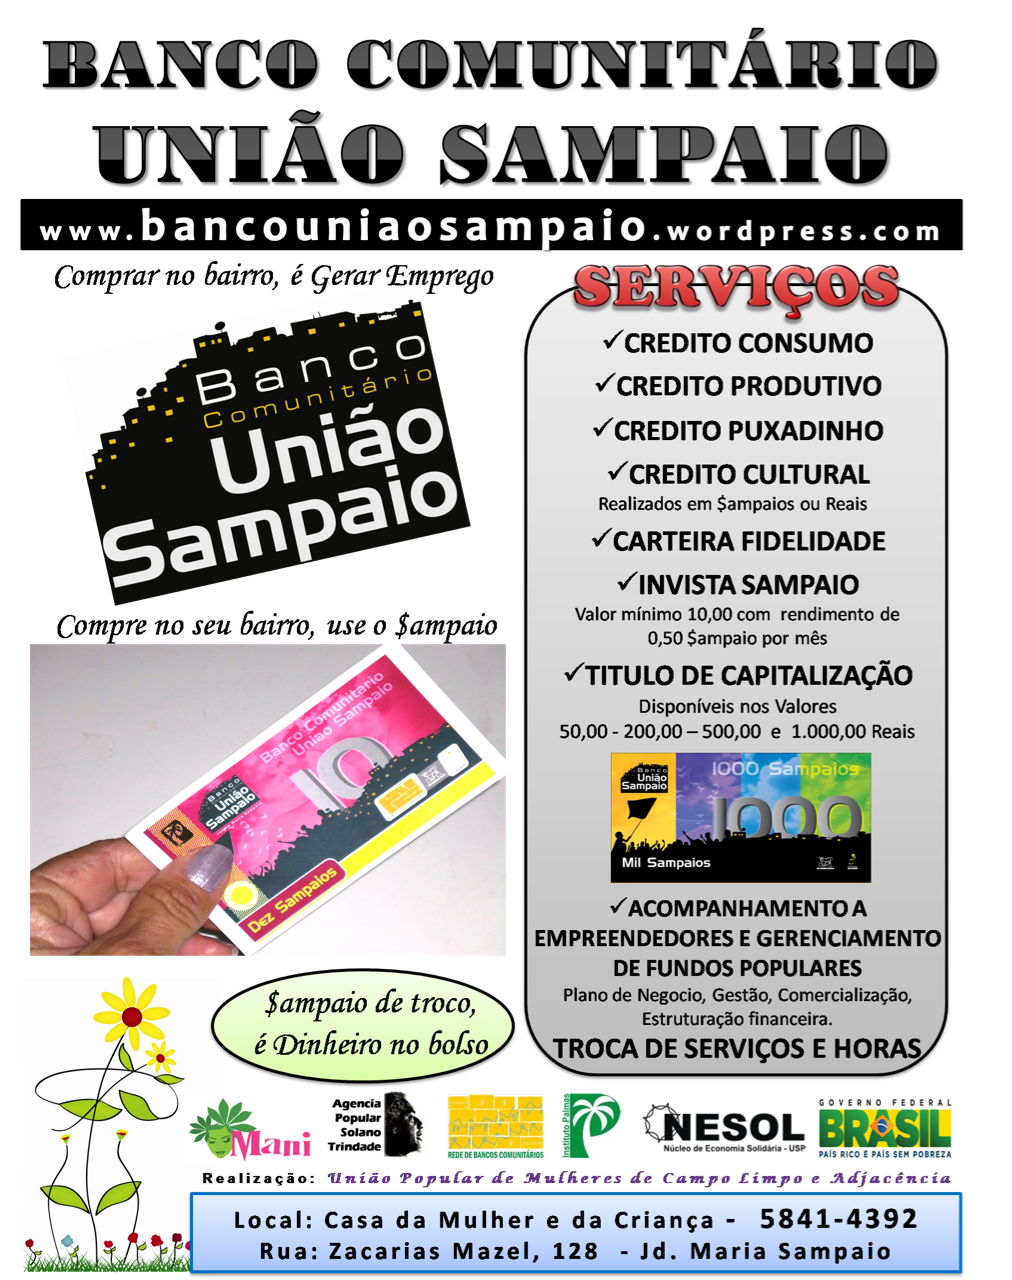 Bancoa3_-_união_sampaio